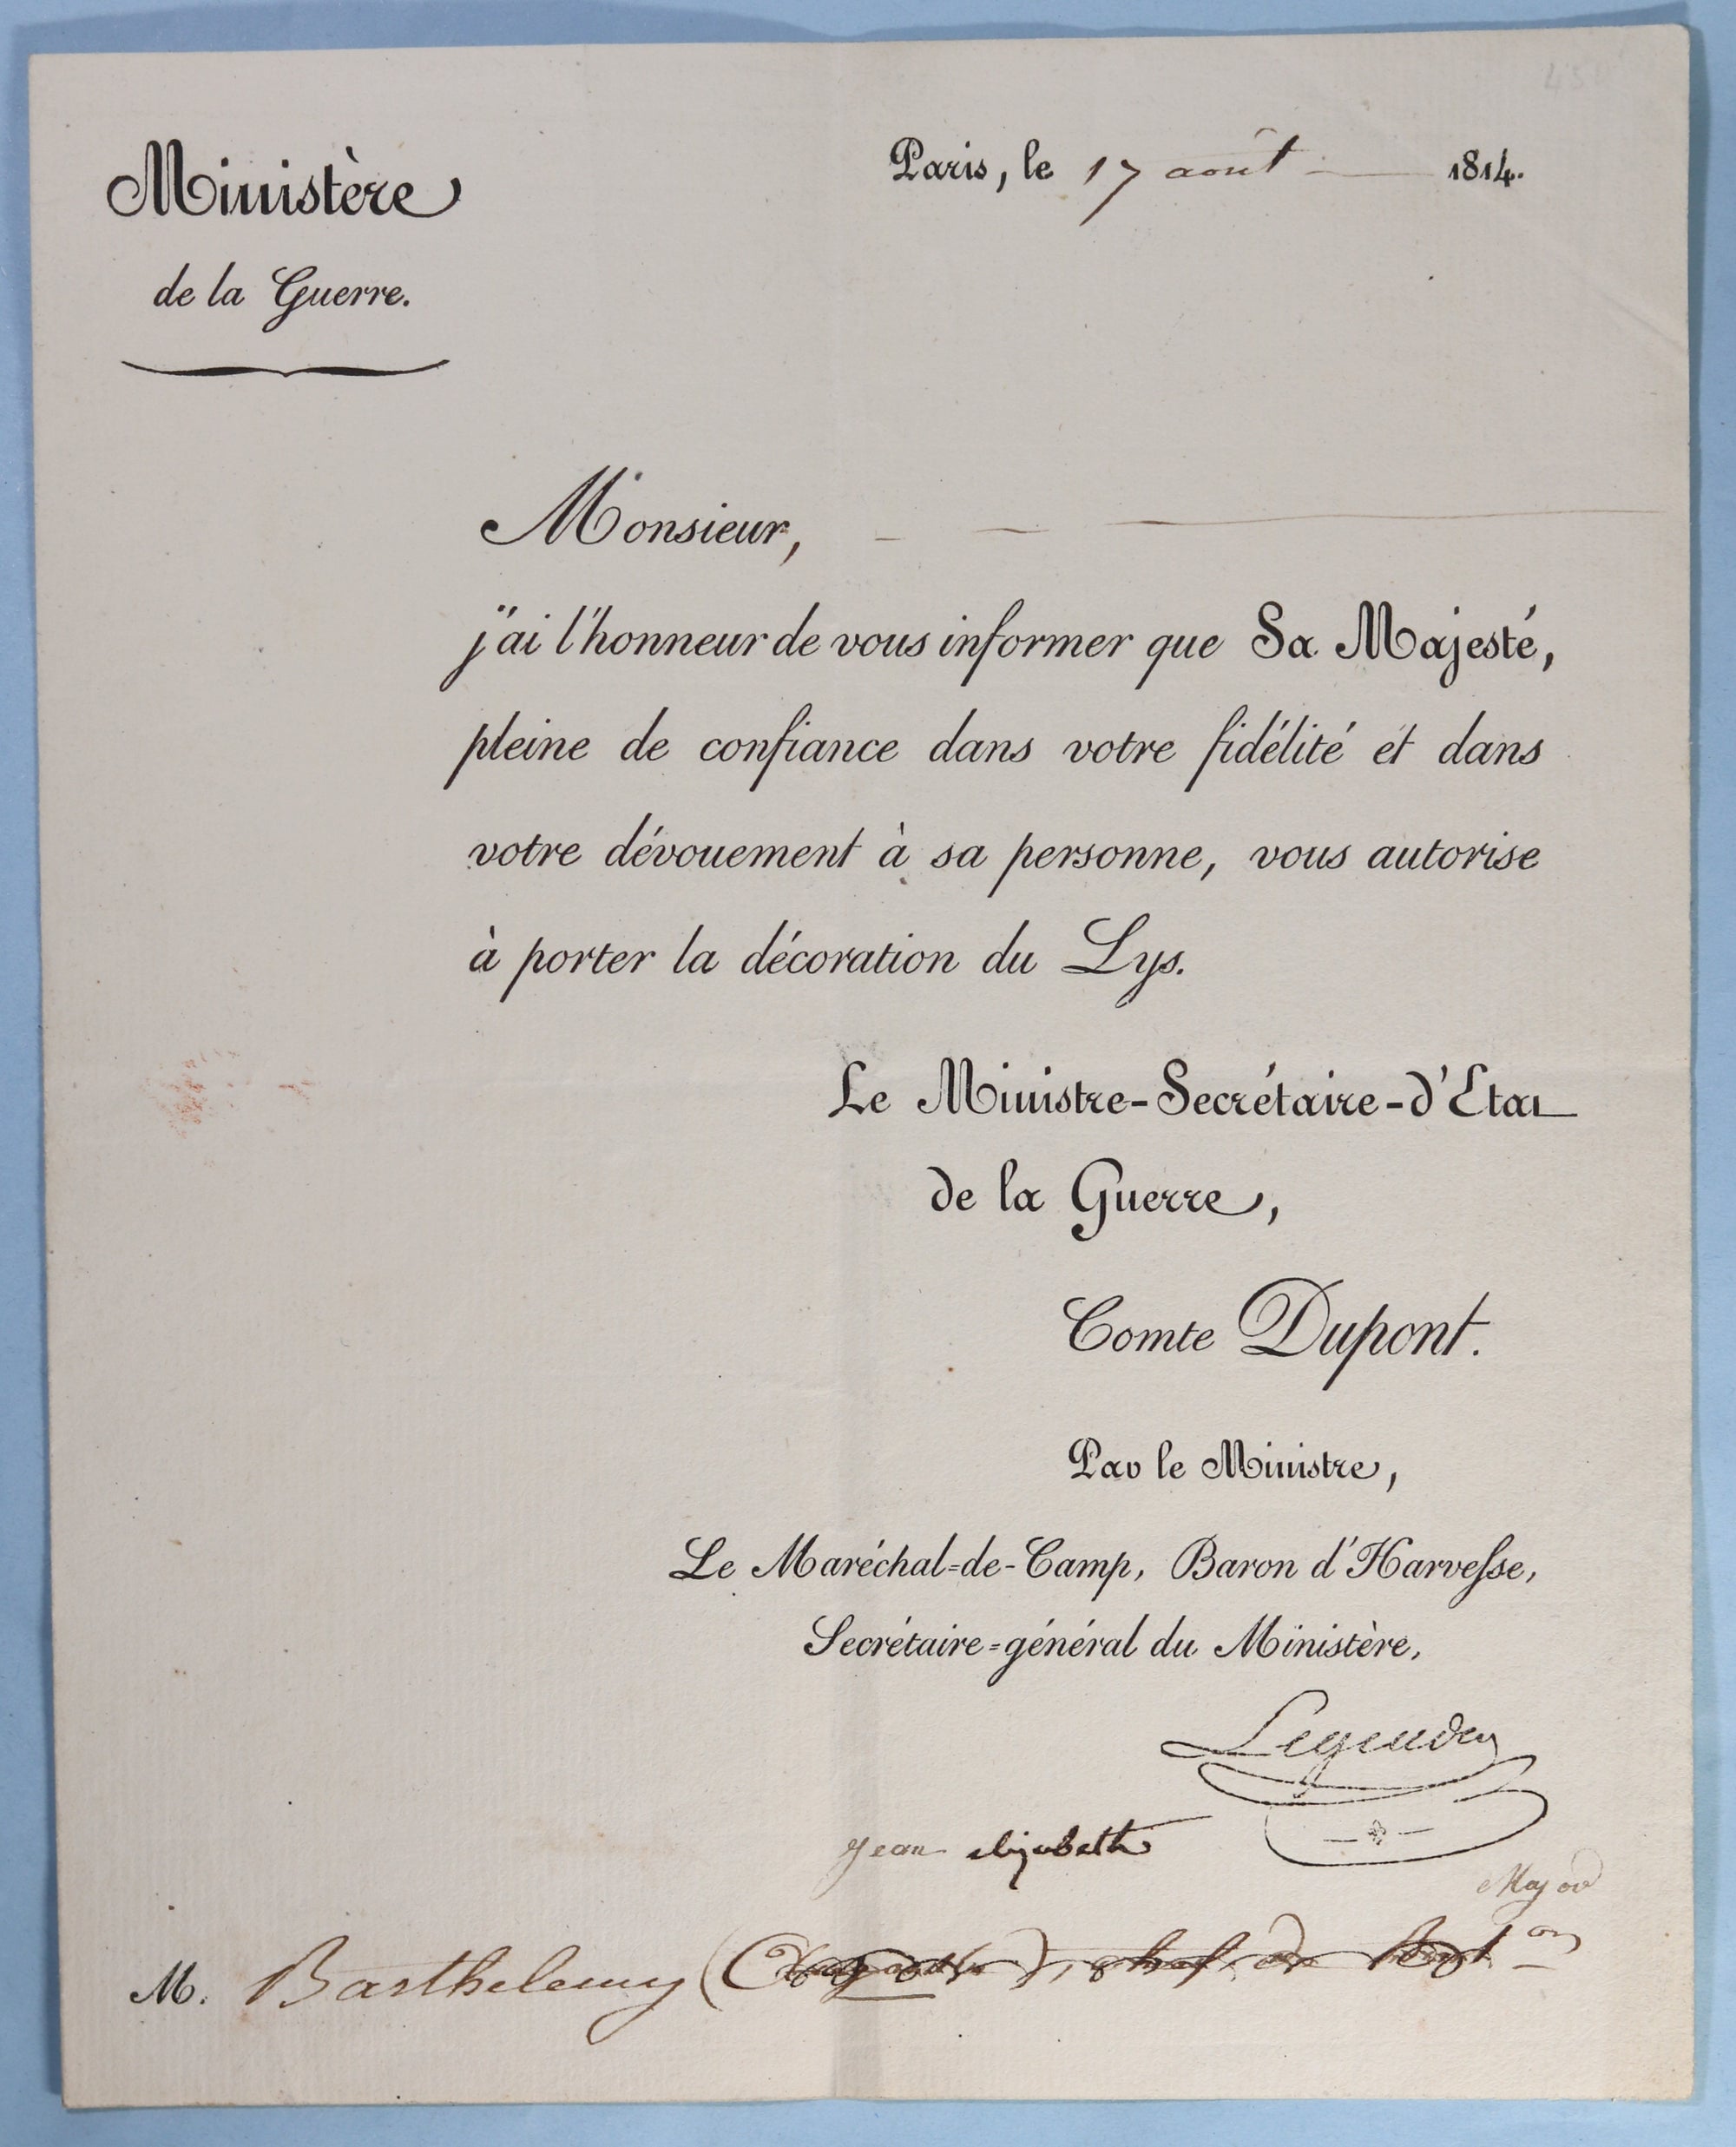 1814 autorisation pour porter la décoration du Lys (Louis XVIII)